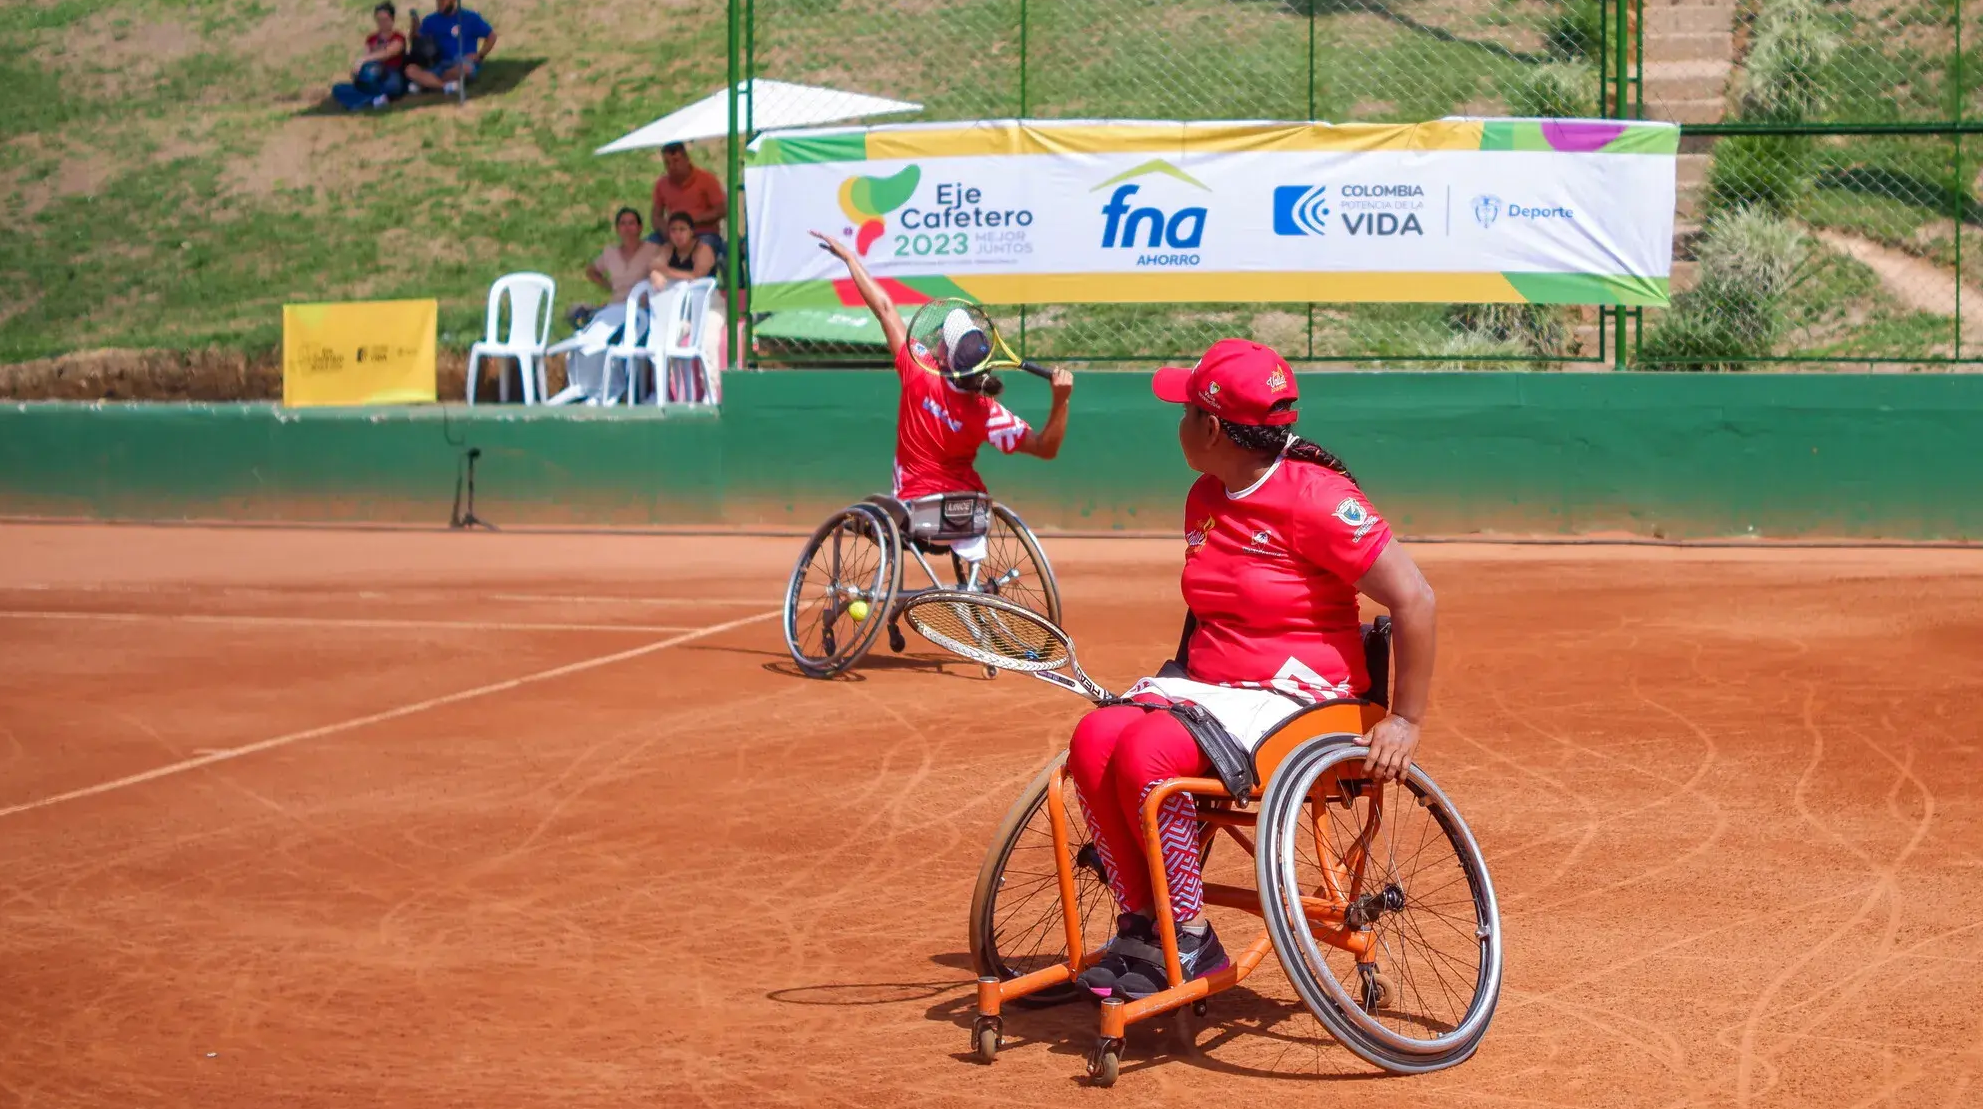 Tenis silla ruedas - juegos nacionales 2.png (3.86 MB)